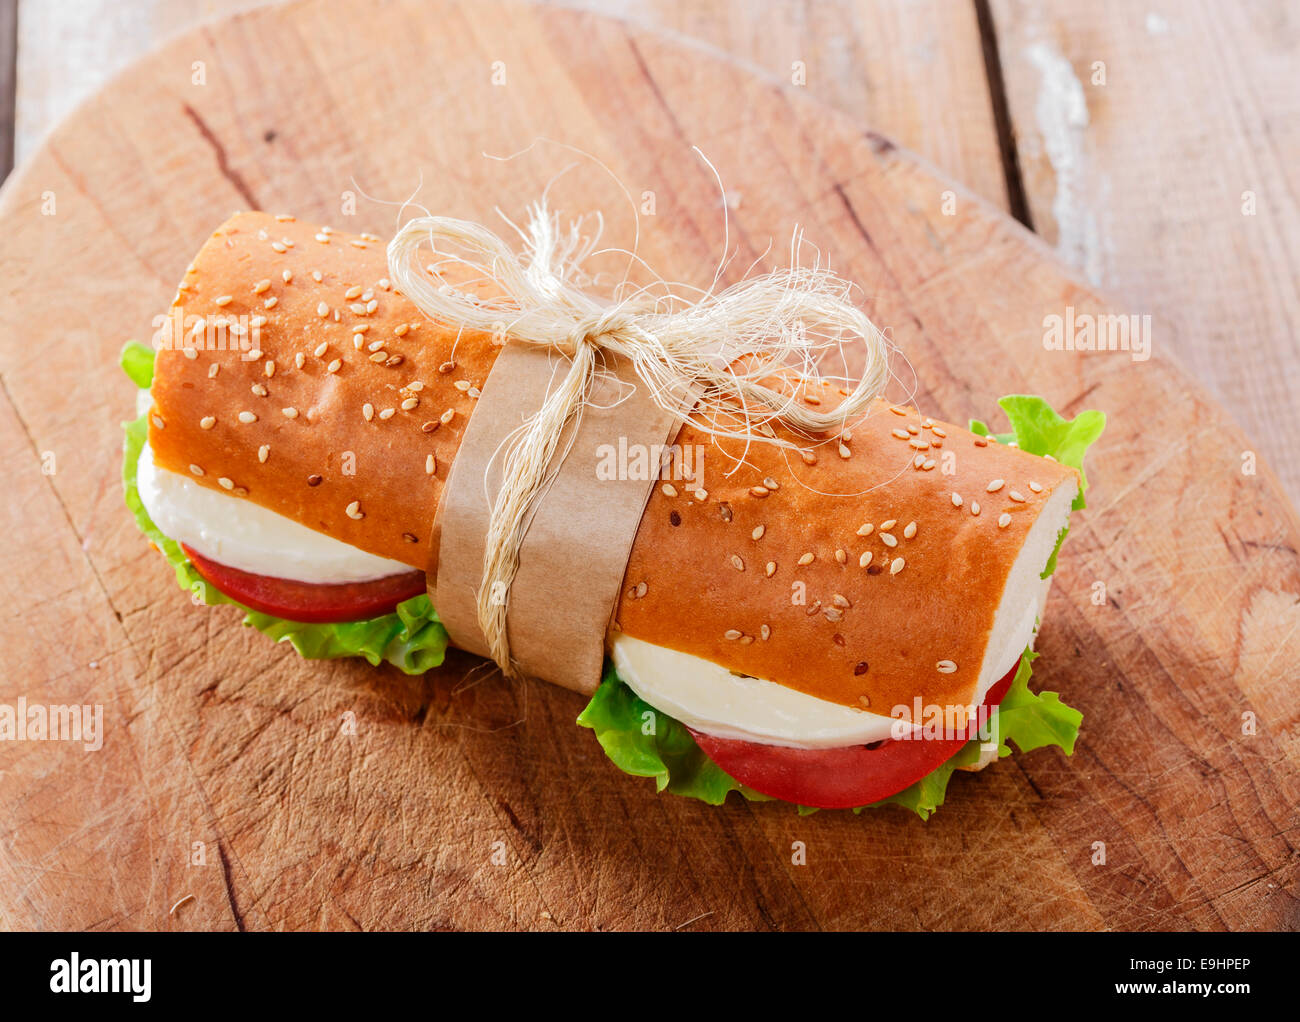 Baguette-Sandwich mit Mozzarella und Tomaten Stockfoto